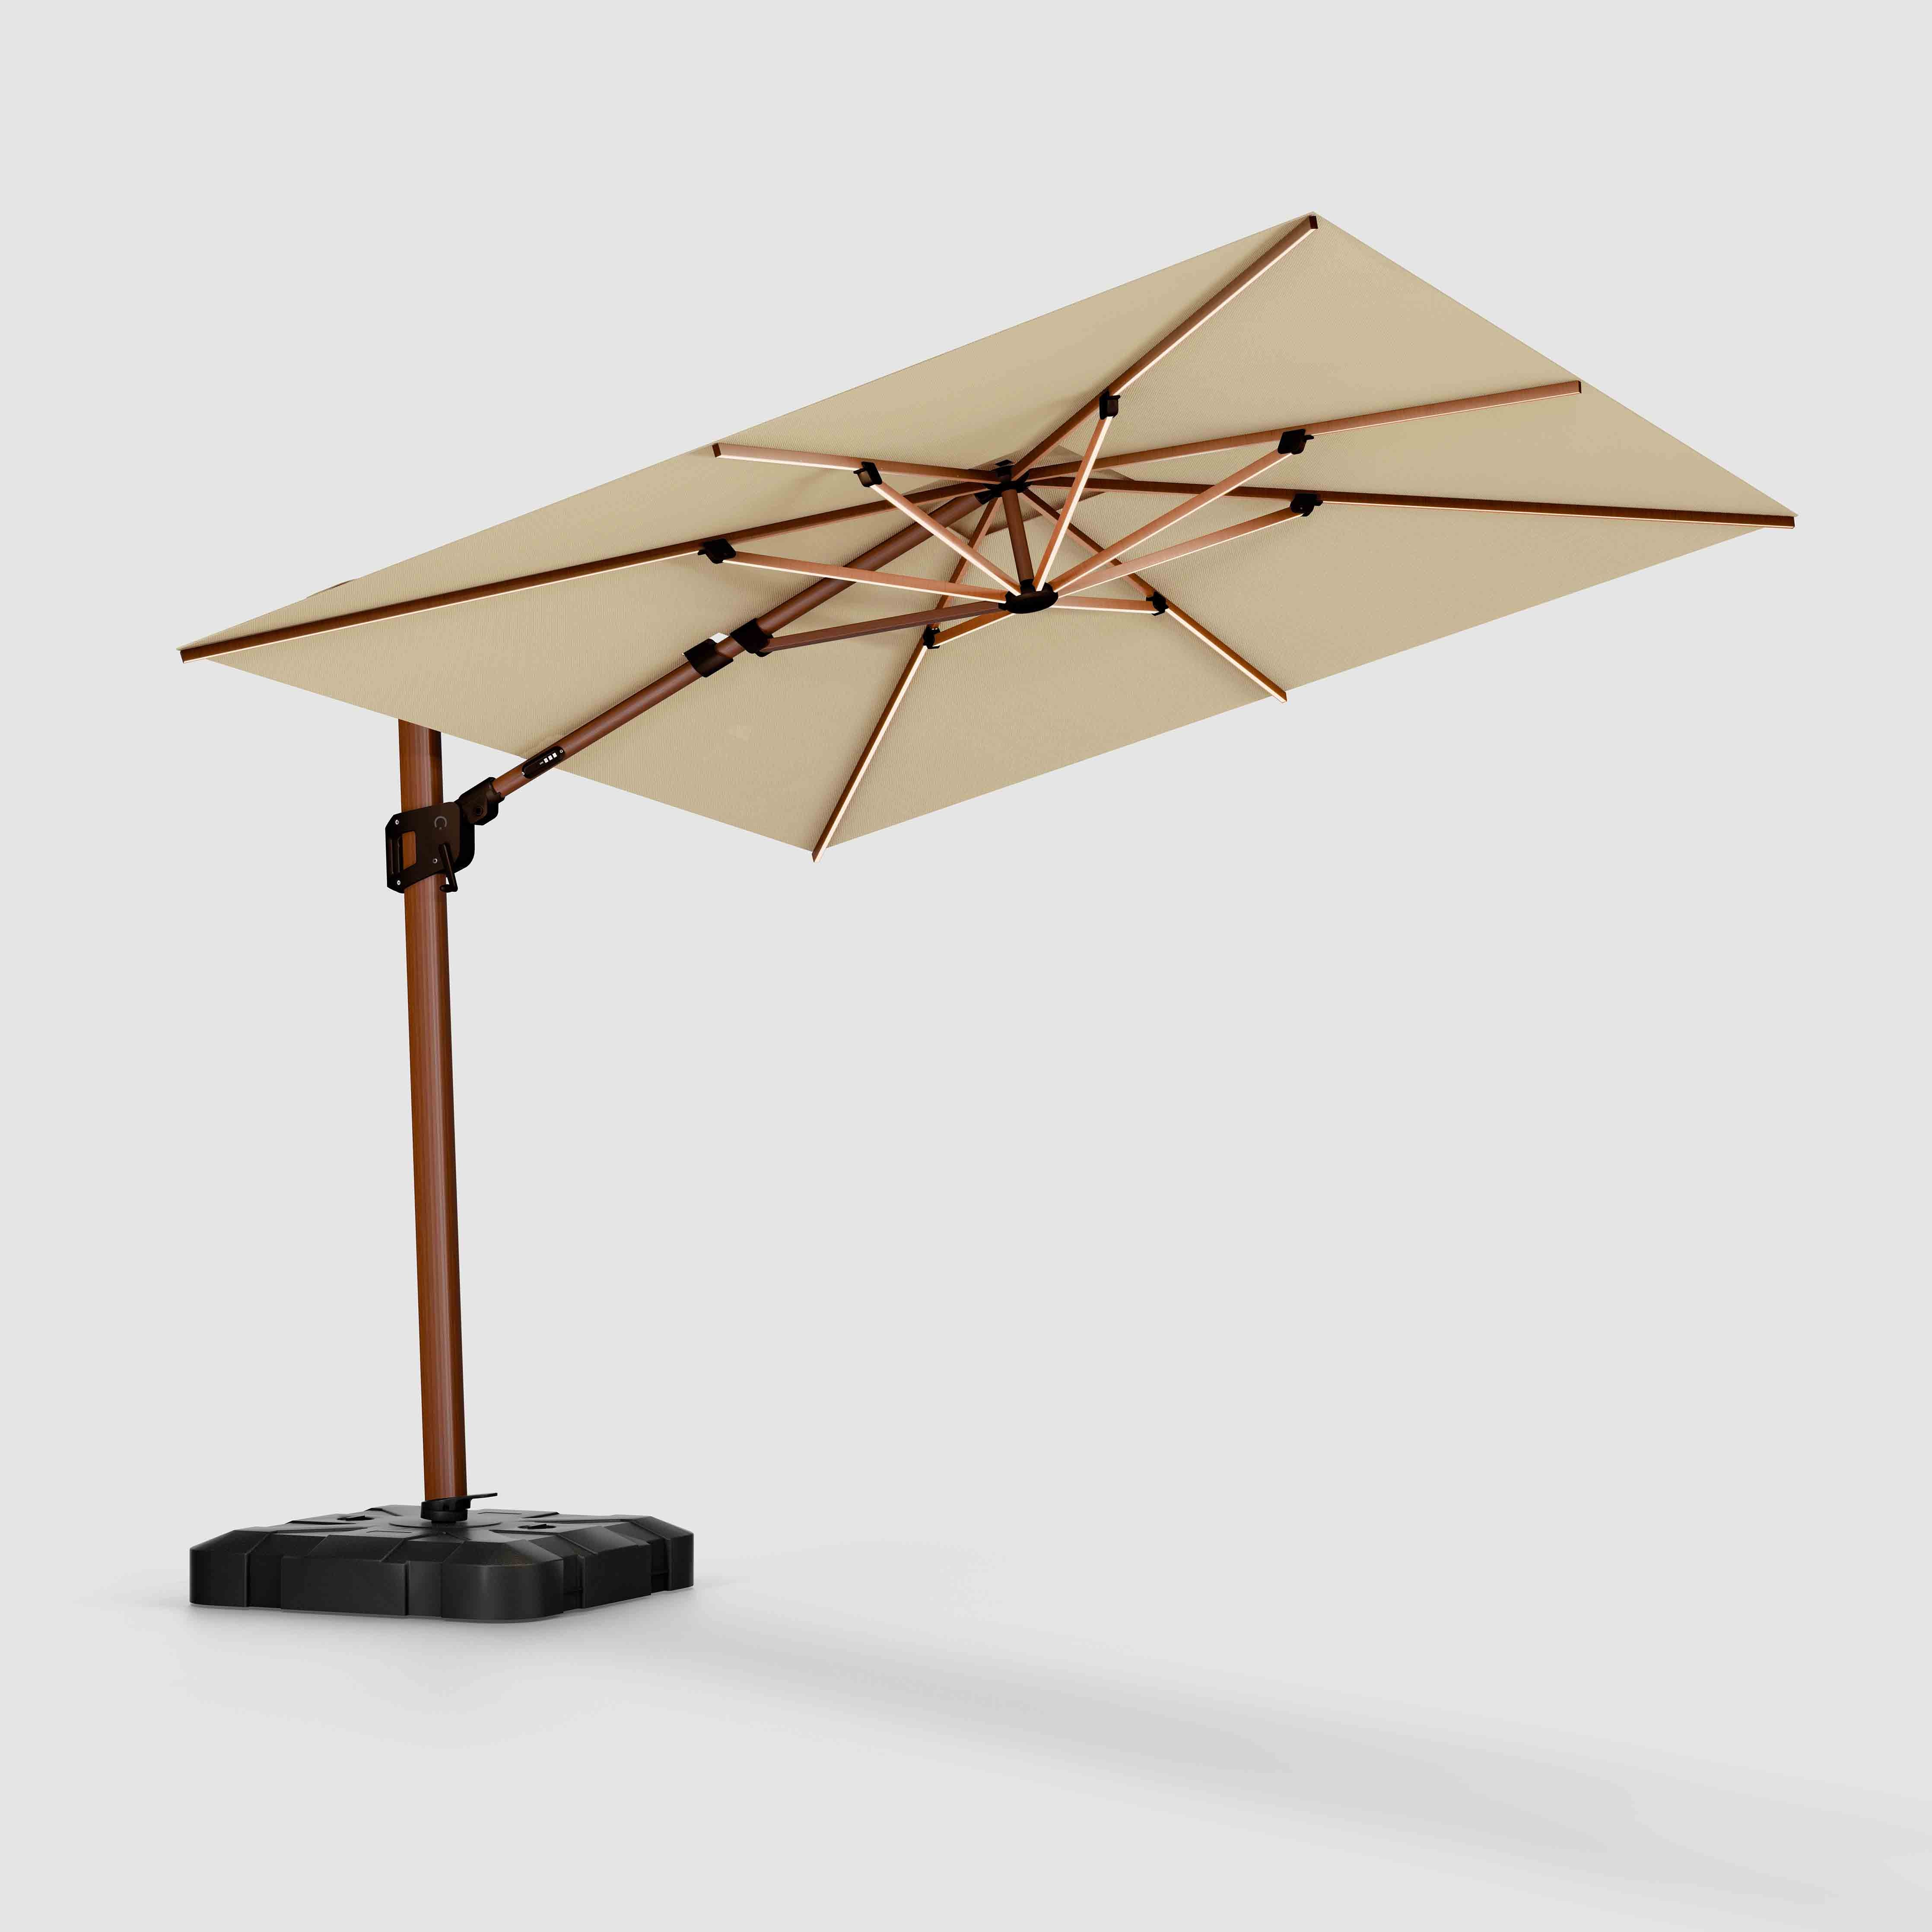 The Supreme Wooden™ - Sunbrella Heather Tan